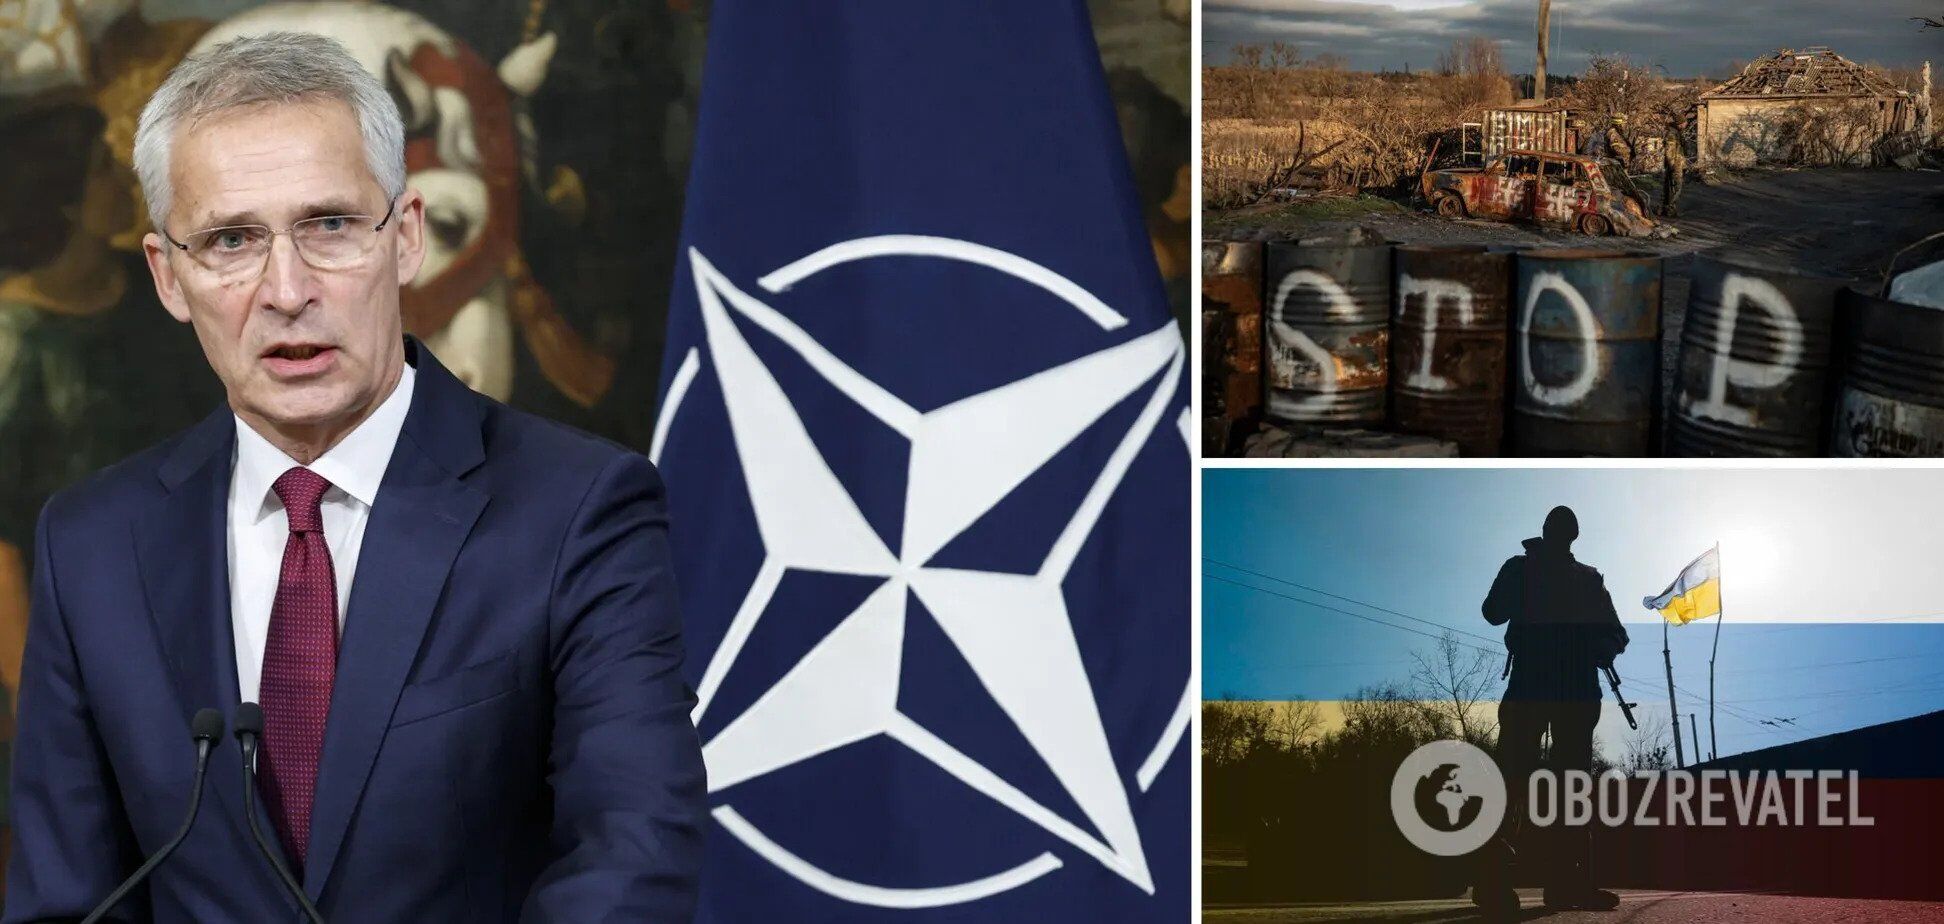 "Зберігайте спокій і дайте Україні танки": глава МЗС Литви закликав НАТО посилити підтримку України. Чого чекати від зустрічі в Бухаресті  